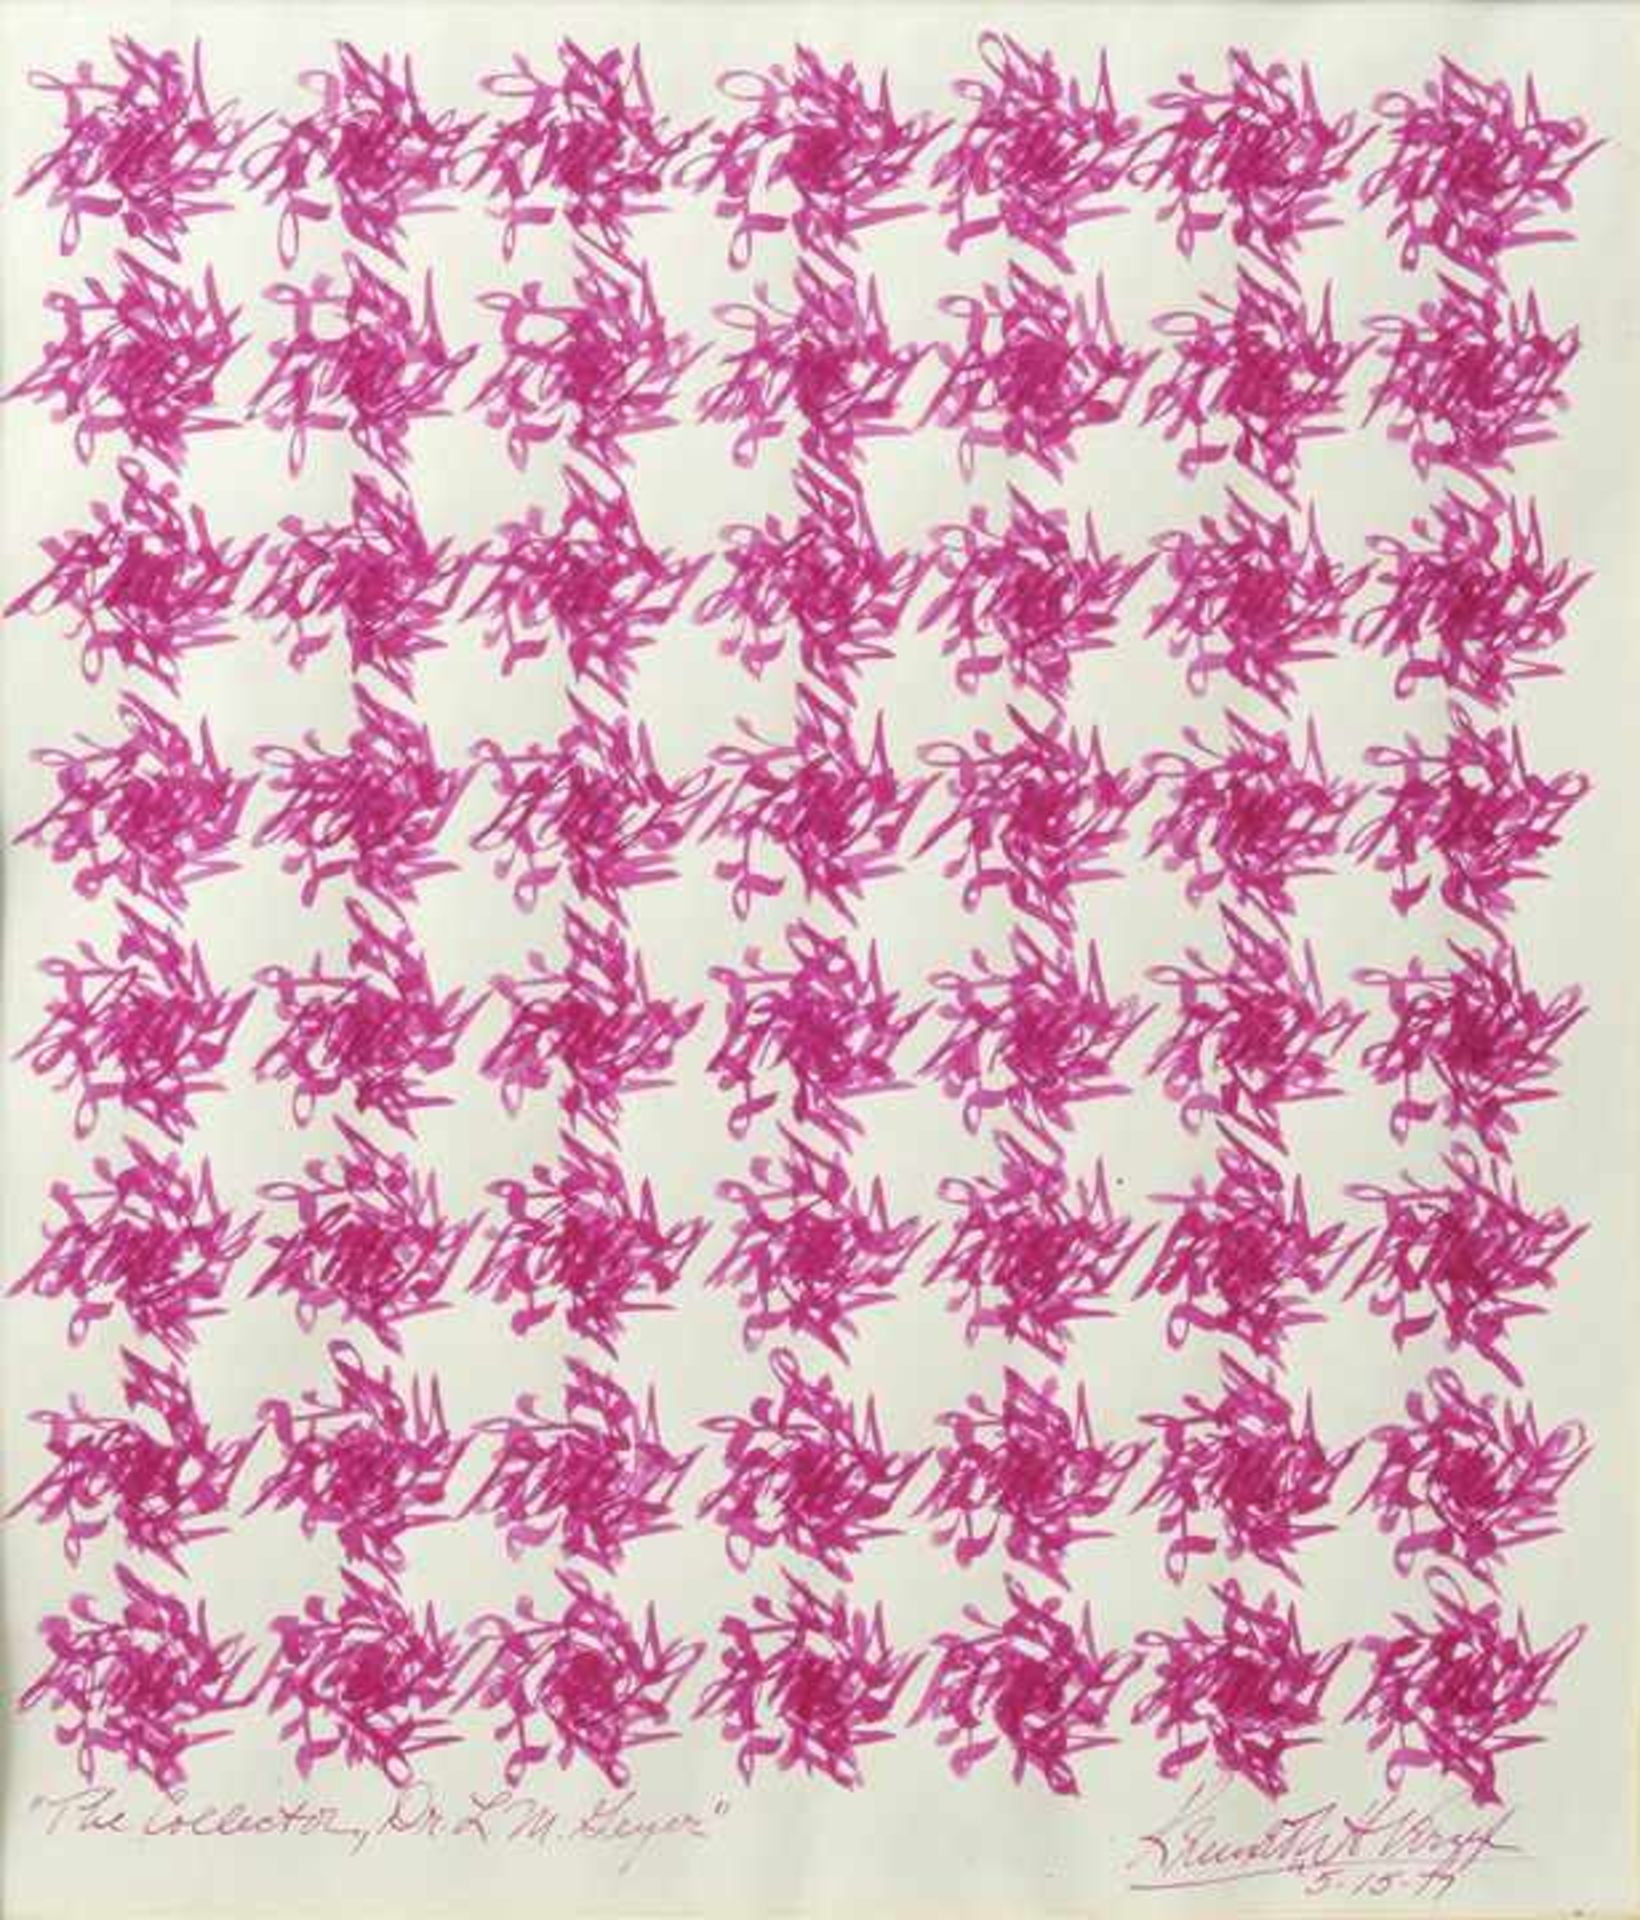 Verzyl, Kenneth H. Abstrakte Komposition. 1977. Tuschfeder in Pink, sign., dat. "5-15-77", bez. "The